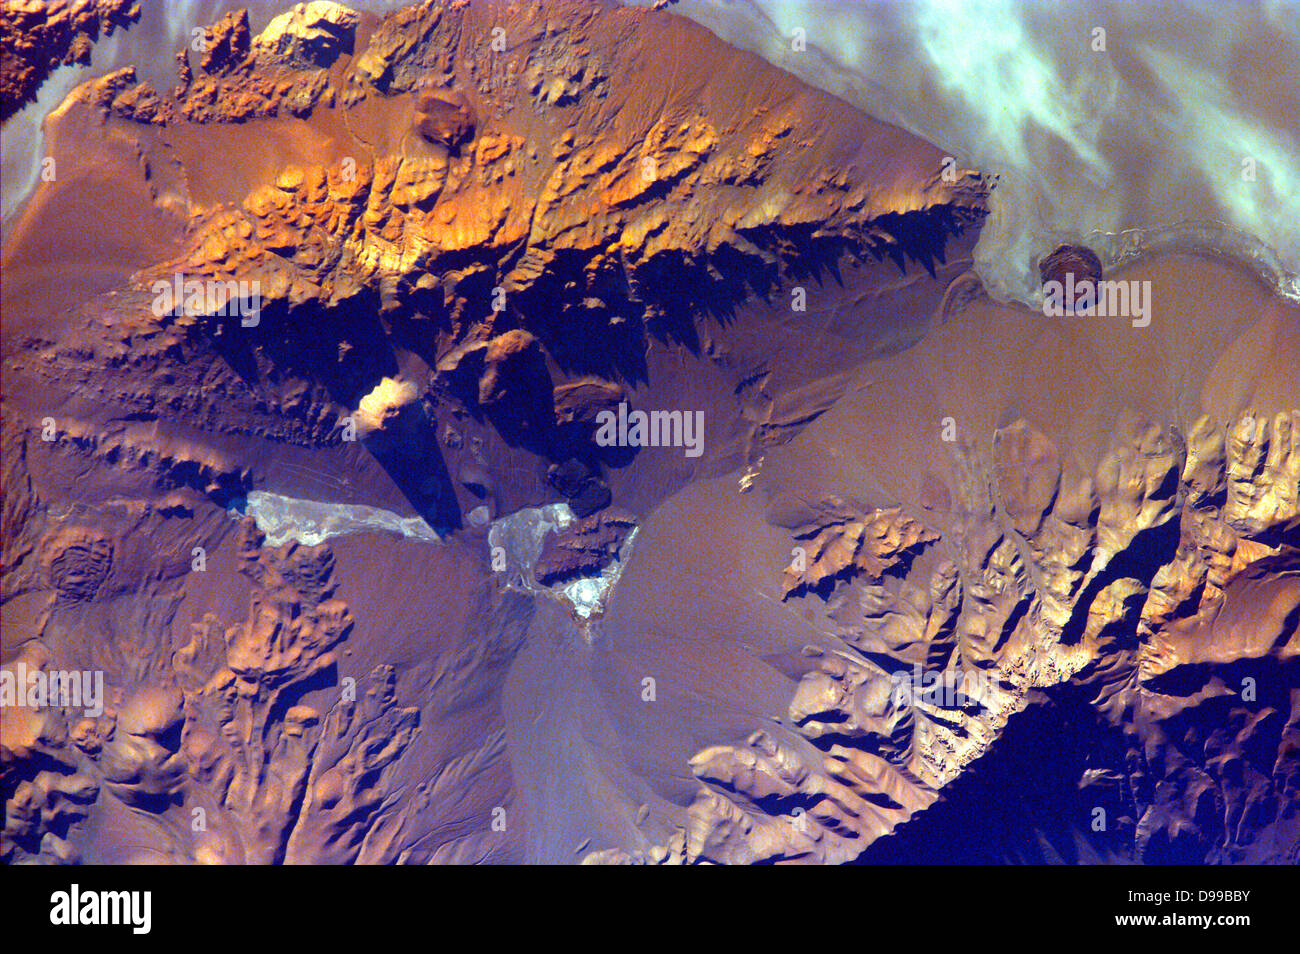 Die Anden sind Teil der südlichen Cordillera gebildet von subduktionszone Vulkanismus an der konvergenten Begrenzung der Nazca Platte und der Südamerikanischen Platte. Aracar Vulkan (Gipfel Elev. 6,082 m) ist eine der vielen Vulkane der Anden, im Osten Argentina-Chile Grenze. Februar 20, 2000. Satellitenbild. Stockfoto